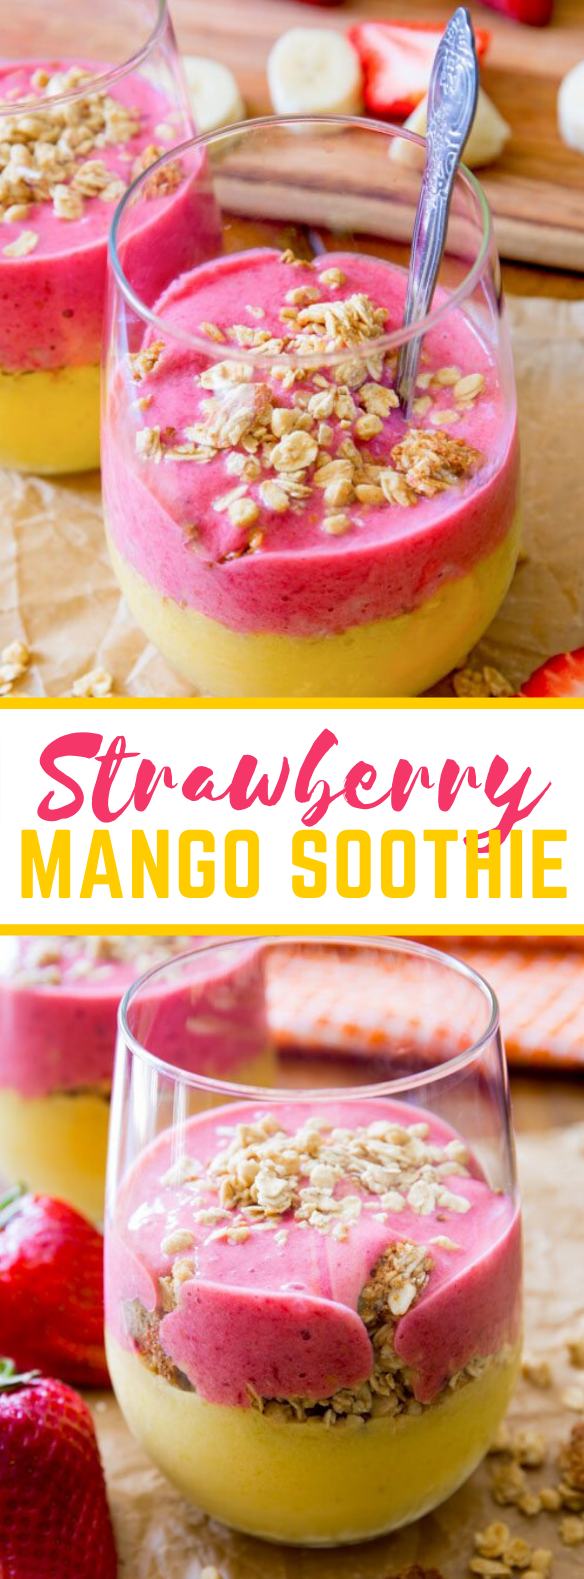 Strawberry Mango Breakfast Smoothie #healthy #diet